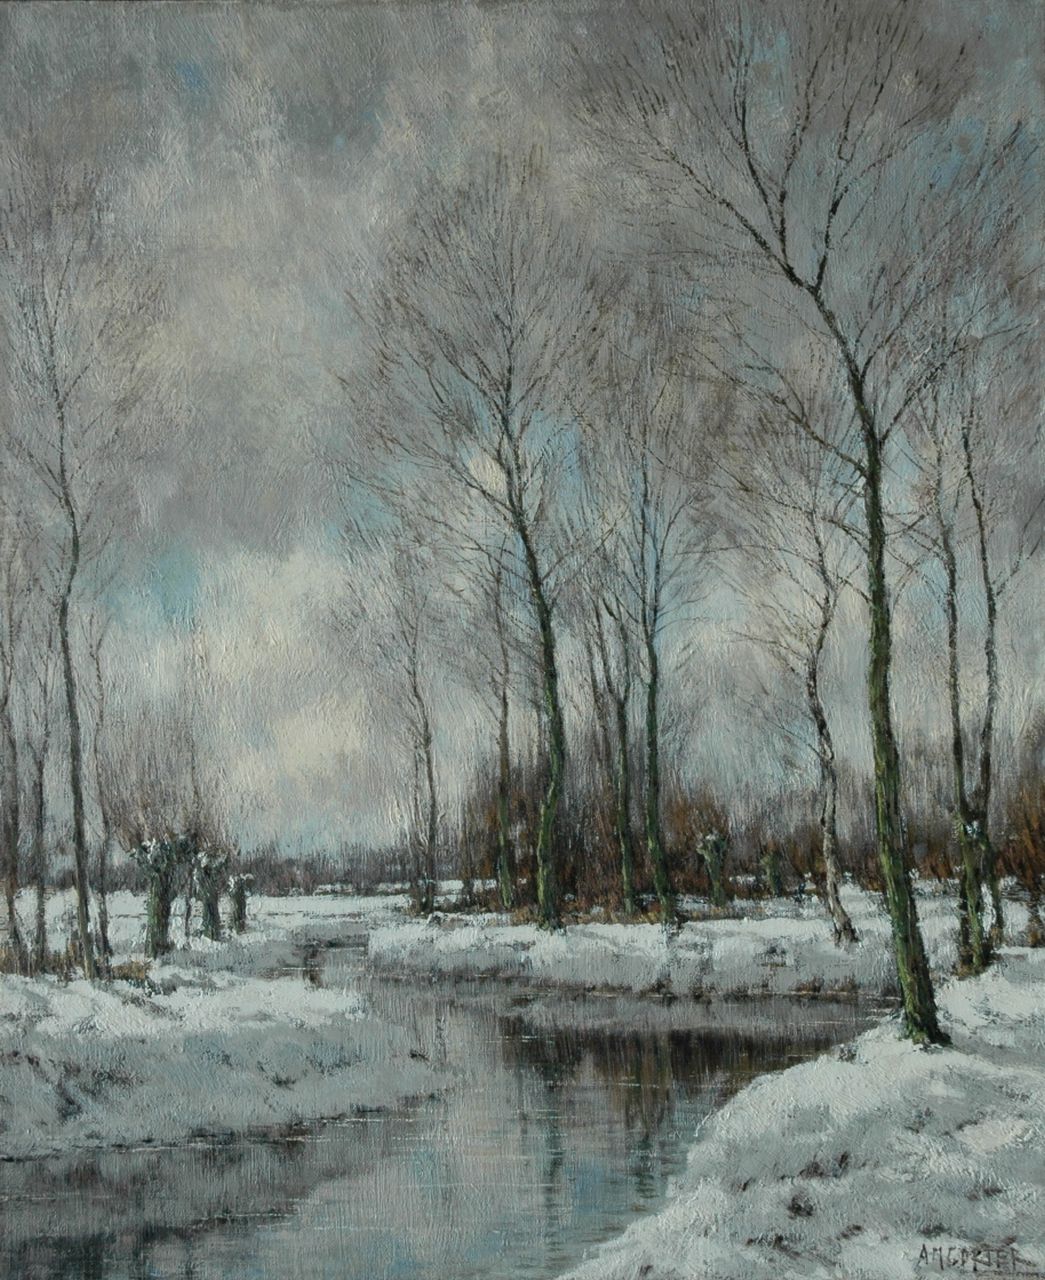 Gorter A.M.  | 'Arnold' Marc Gorter, De Vordense Beek in de winter, olieverf op doek 56,5 x 46,4 cm, gesigneerd rechtsonder